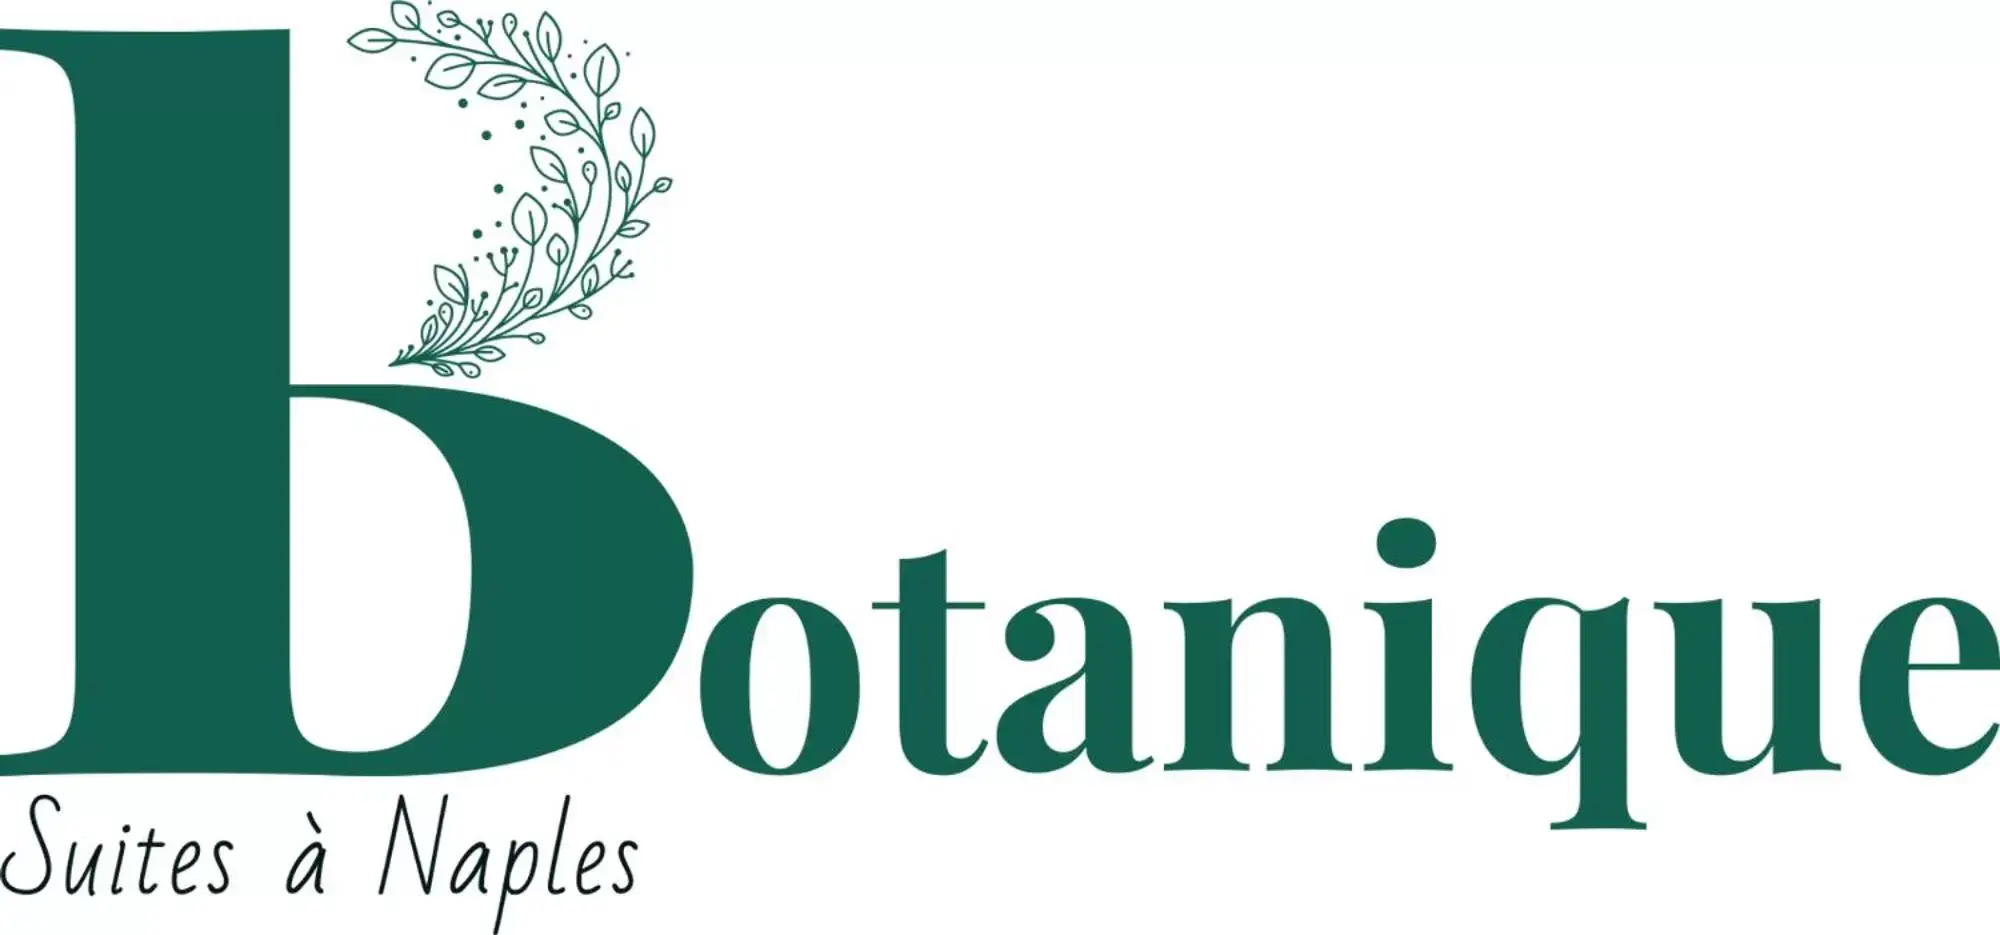 Property Logo/Sign in Botanique